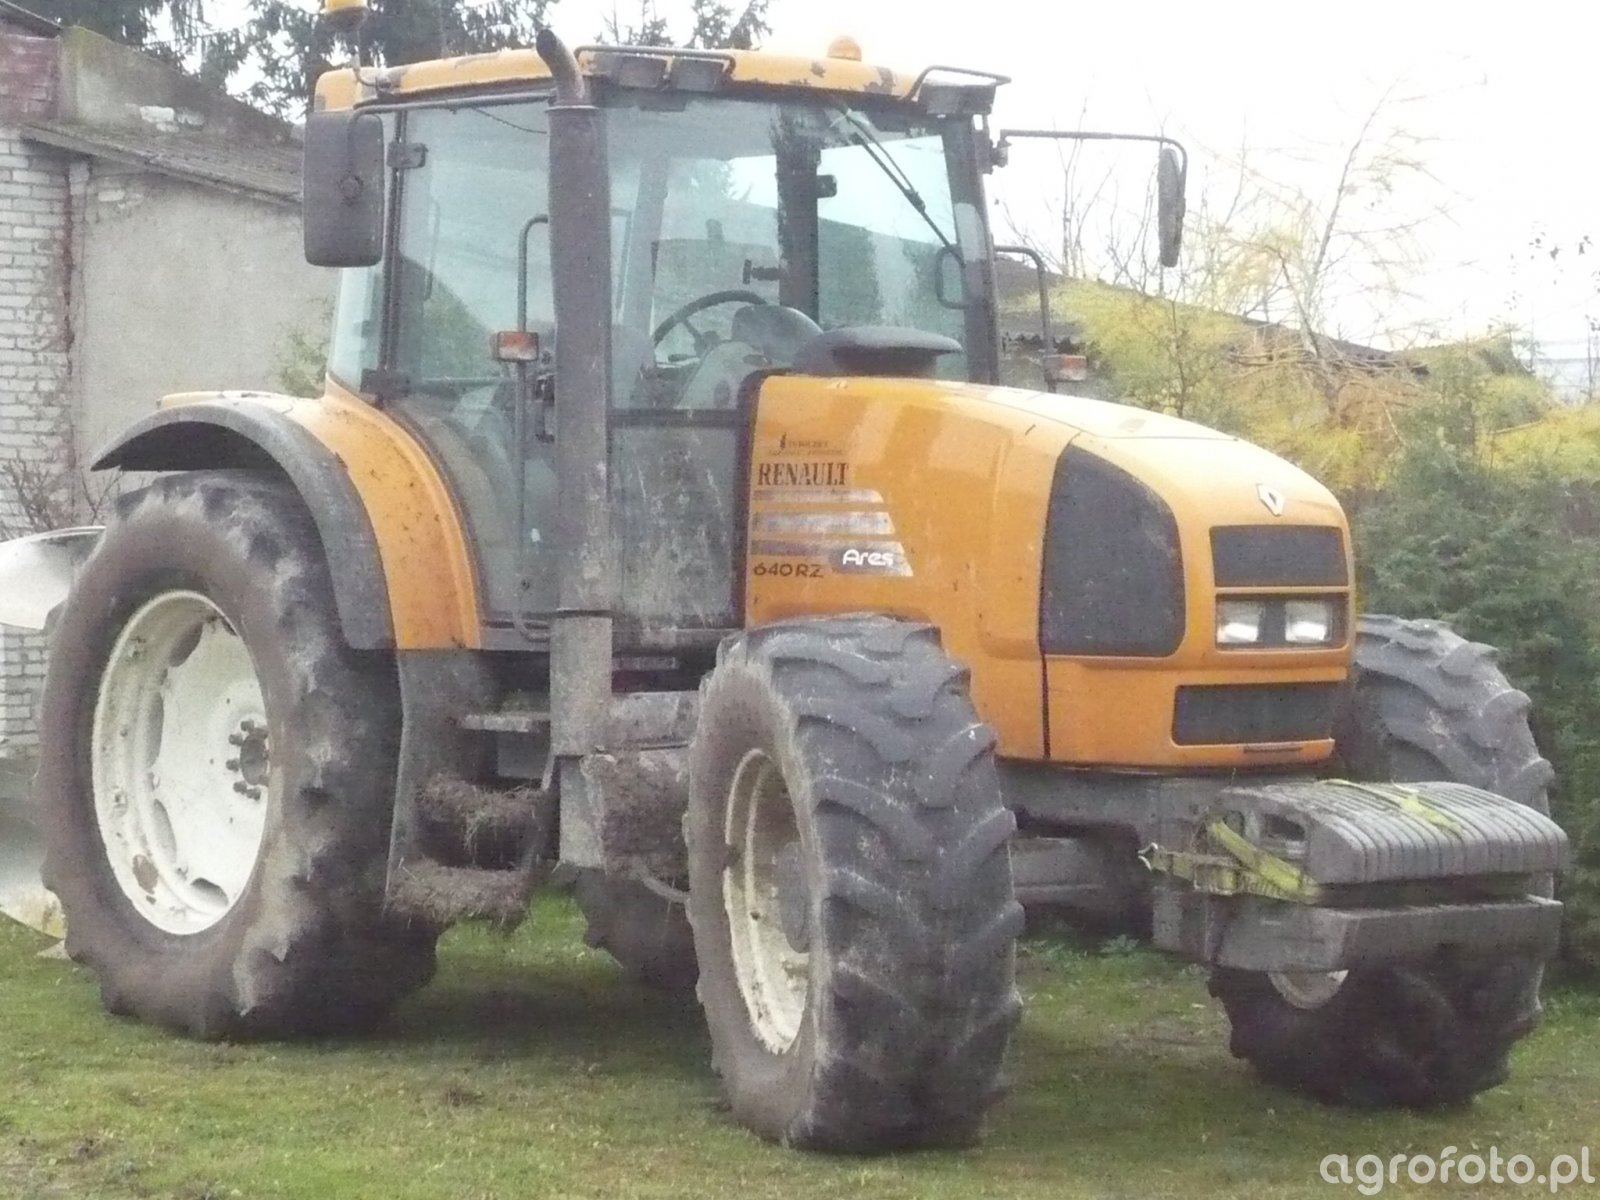 Zdjęcie traktor Renault Ares 640 RZ id533515 Galeria